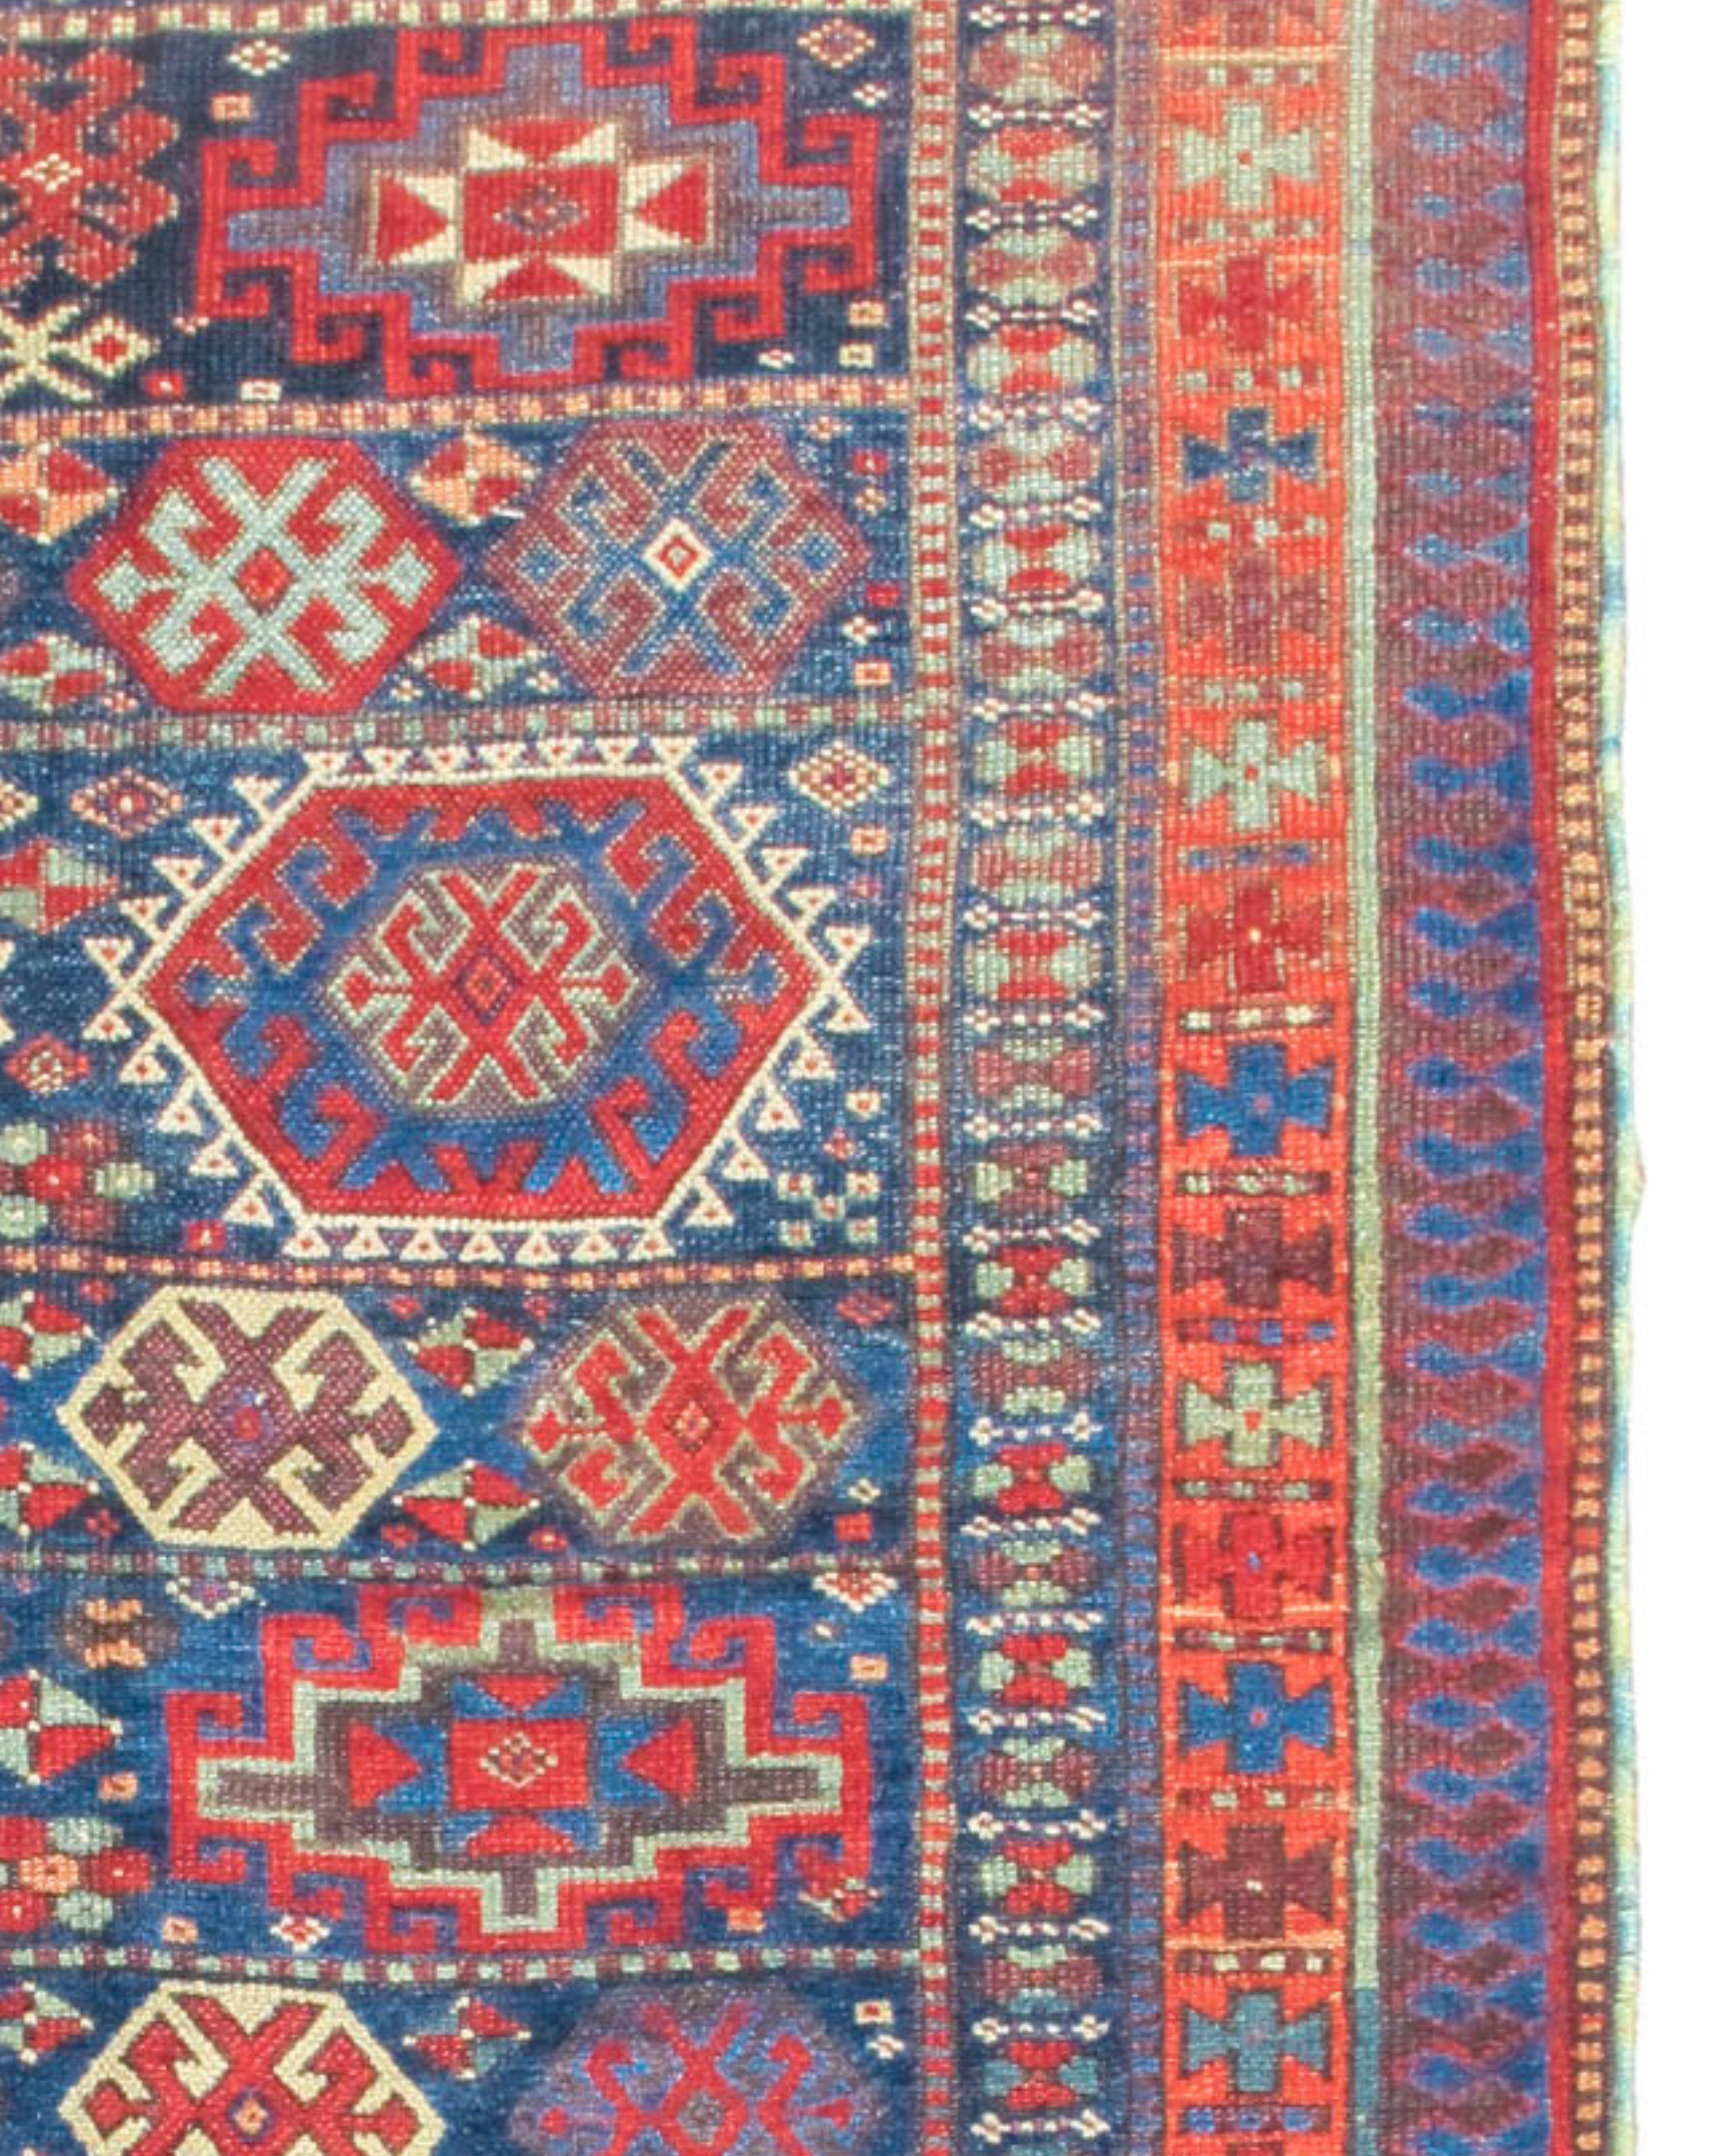 Ancien tapis persan Sanjabi Kurd, fin du 19e siècle

Informations supplémentaires :
Dimensions : 7'11